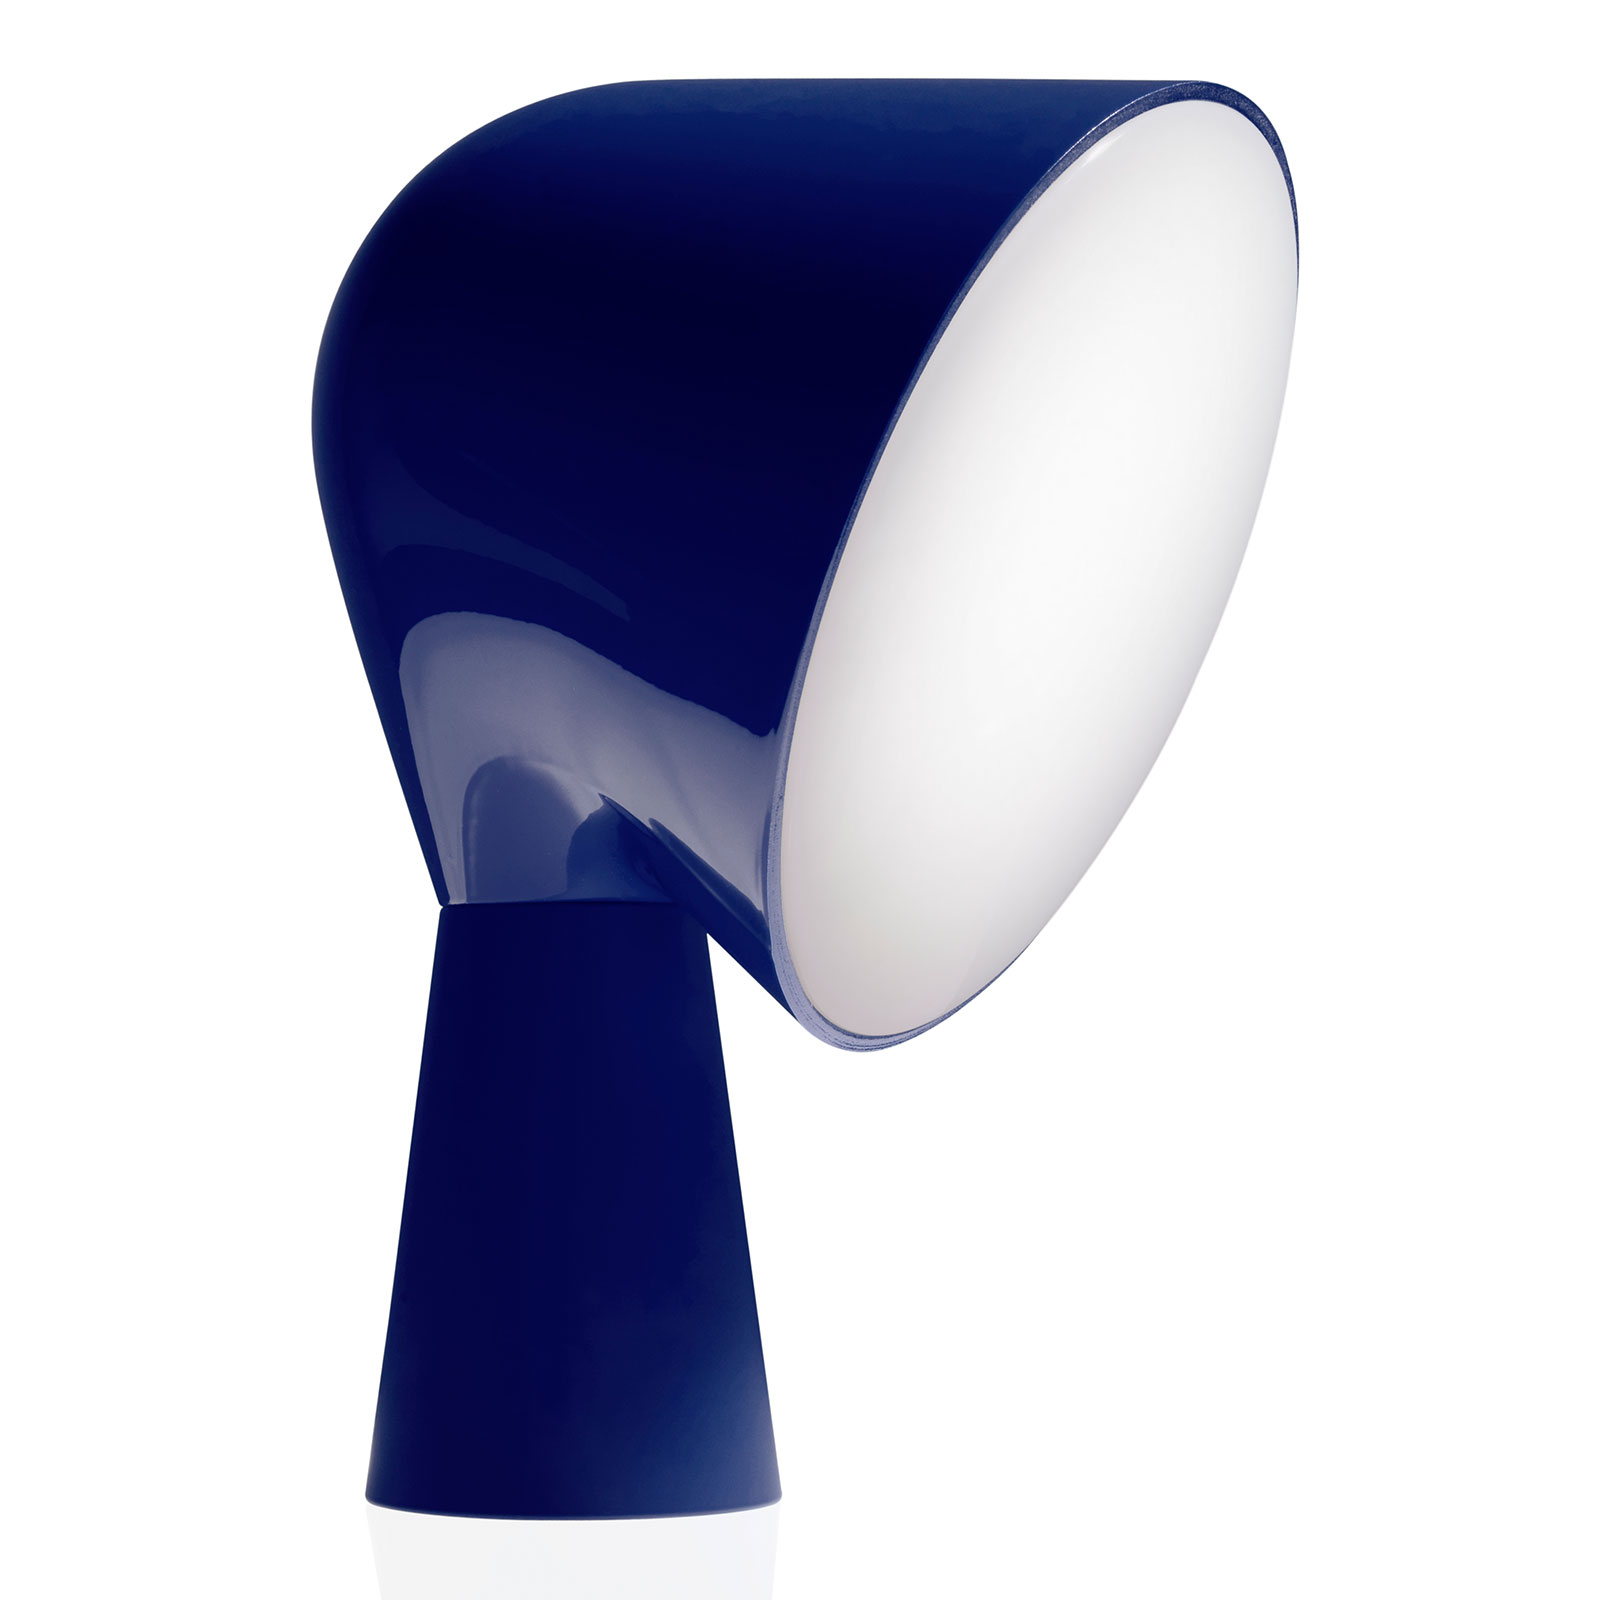 Foscarini Binic designová stolní lampa, modrá